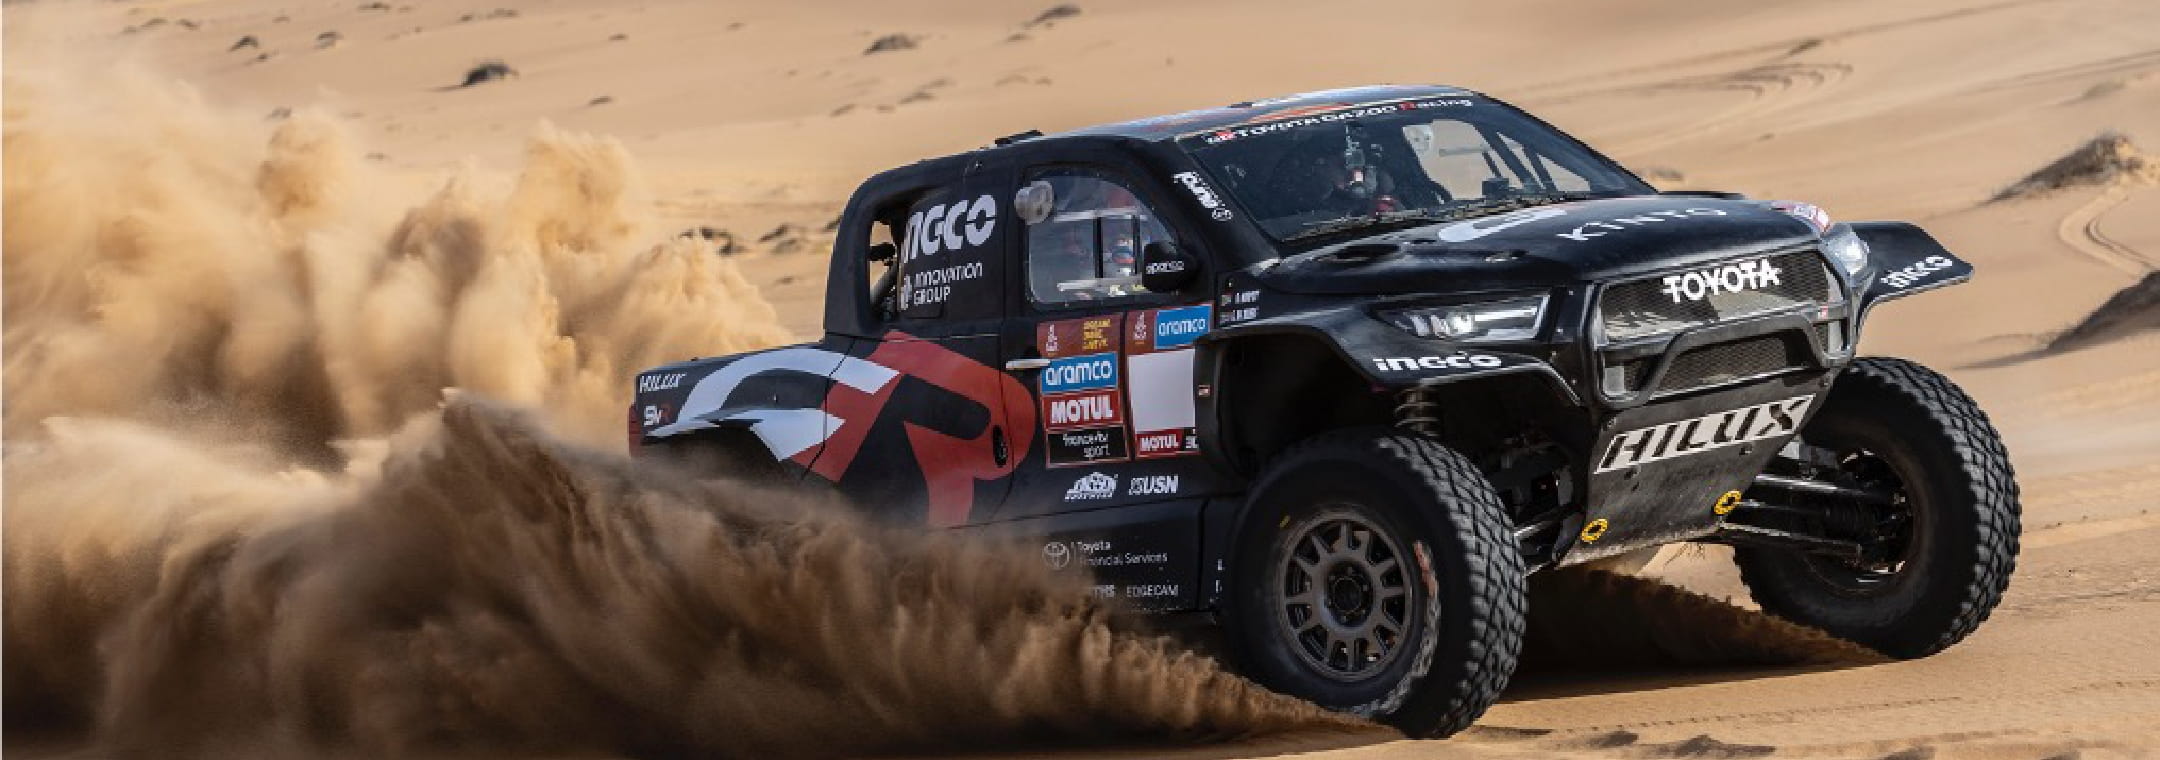 Dakar Rally - image01